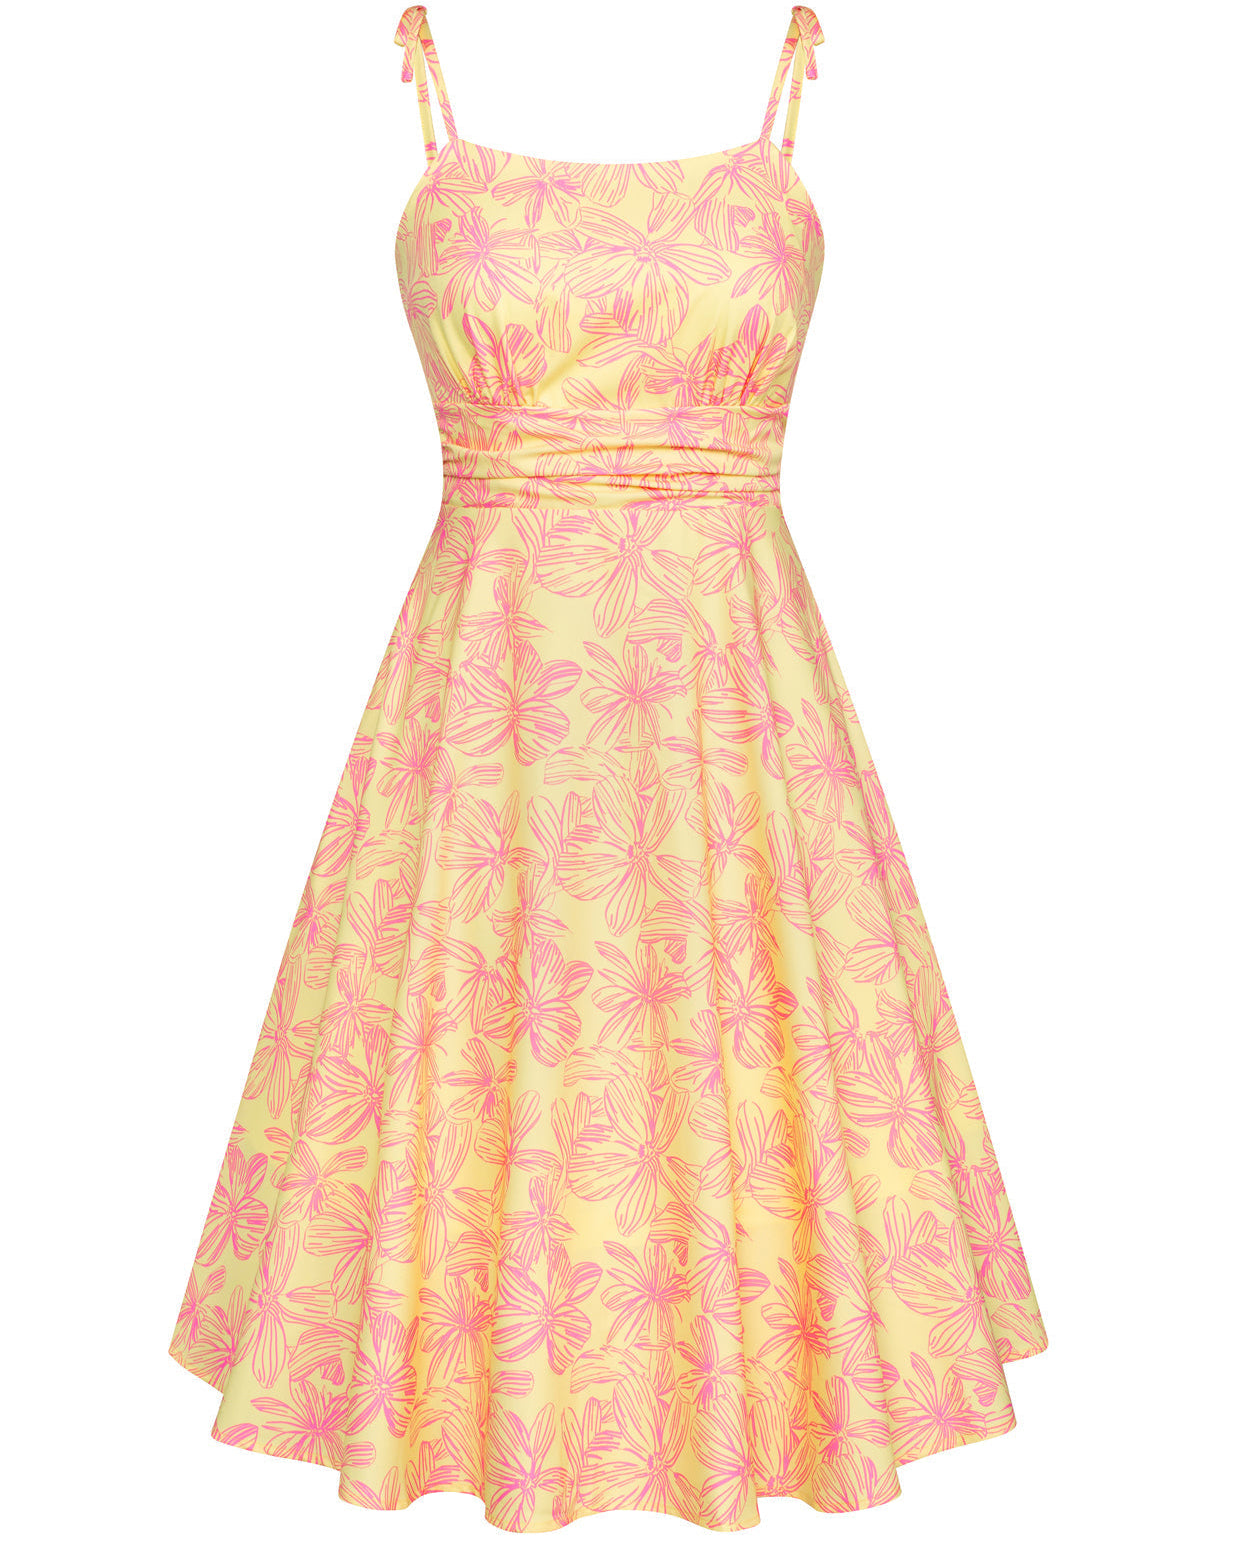 Vintage Floral Pattern Slip Dress